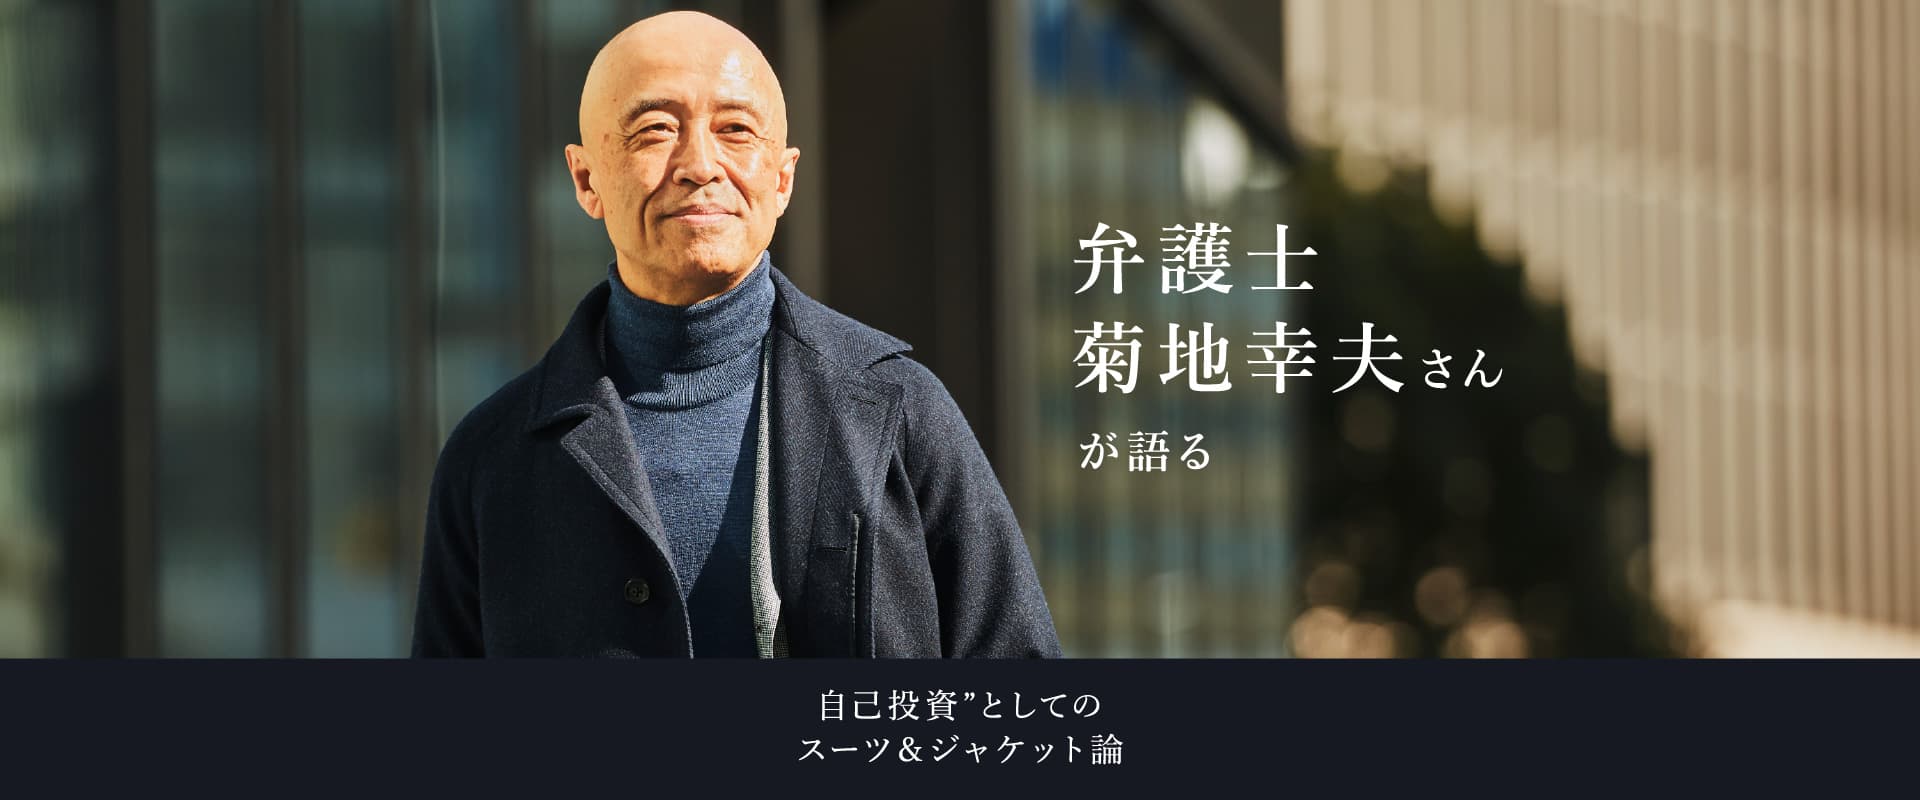 弁護士菊地幸夫さんが語る自己投資”としてのスーツ＆ジャケット論